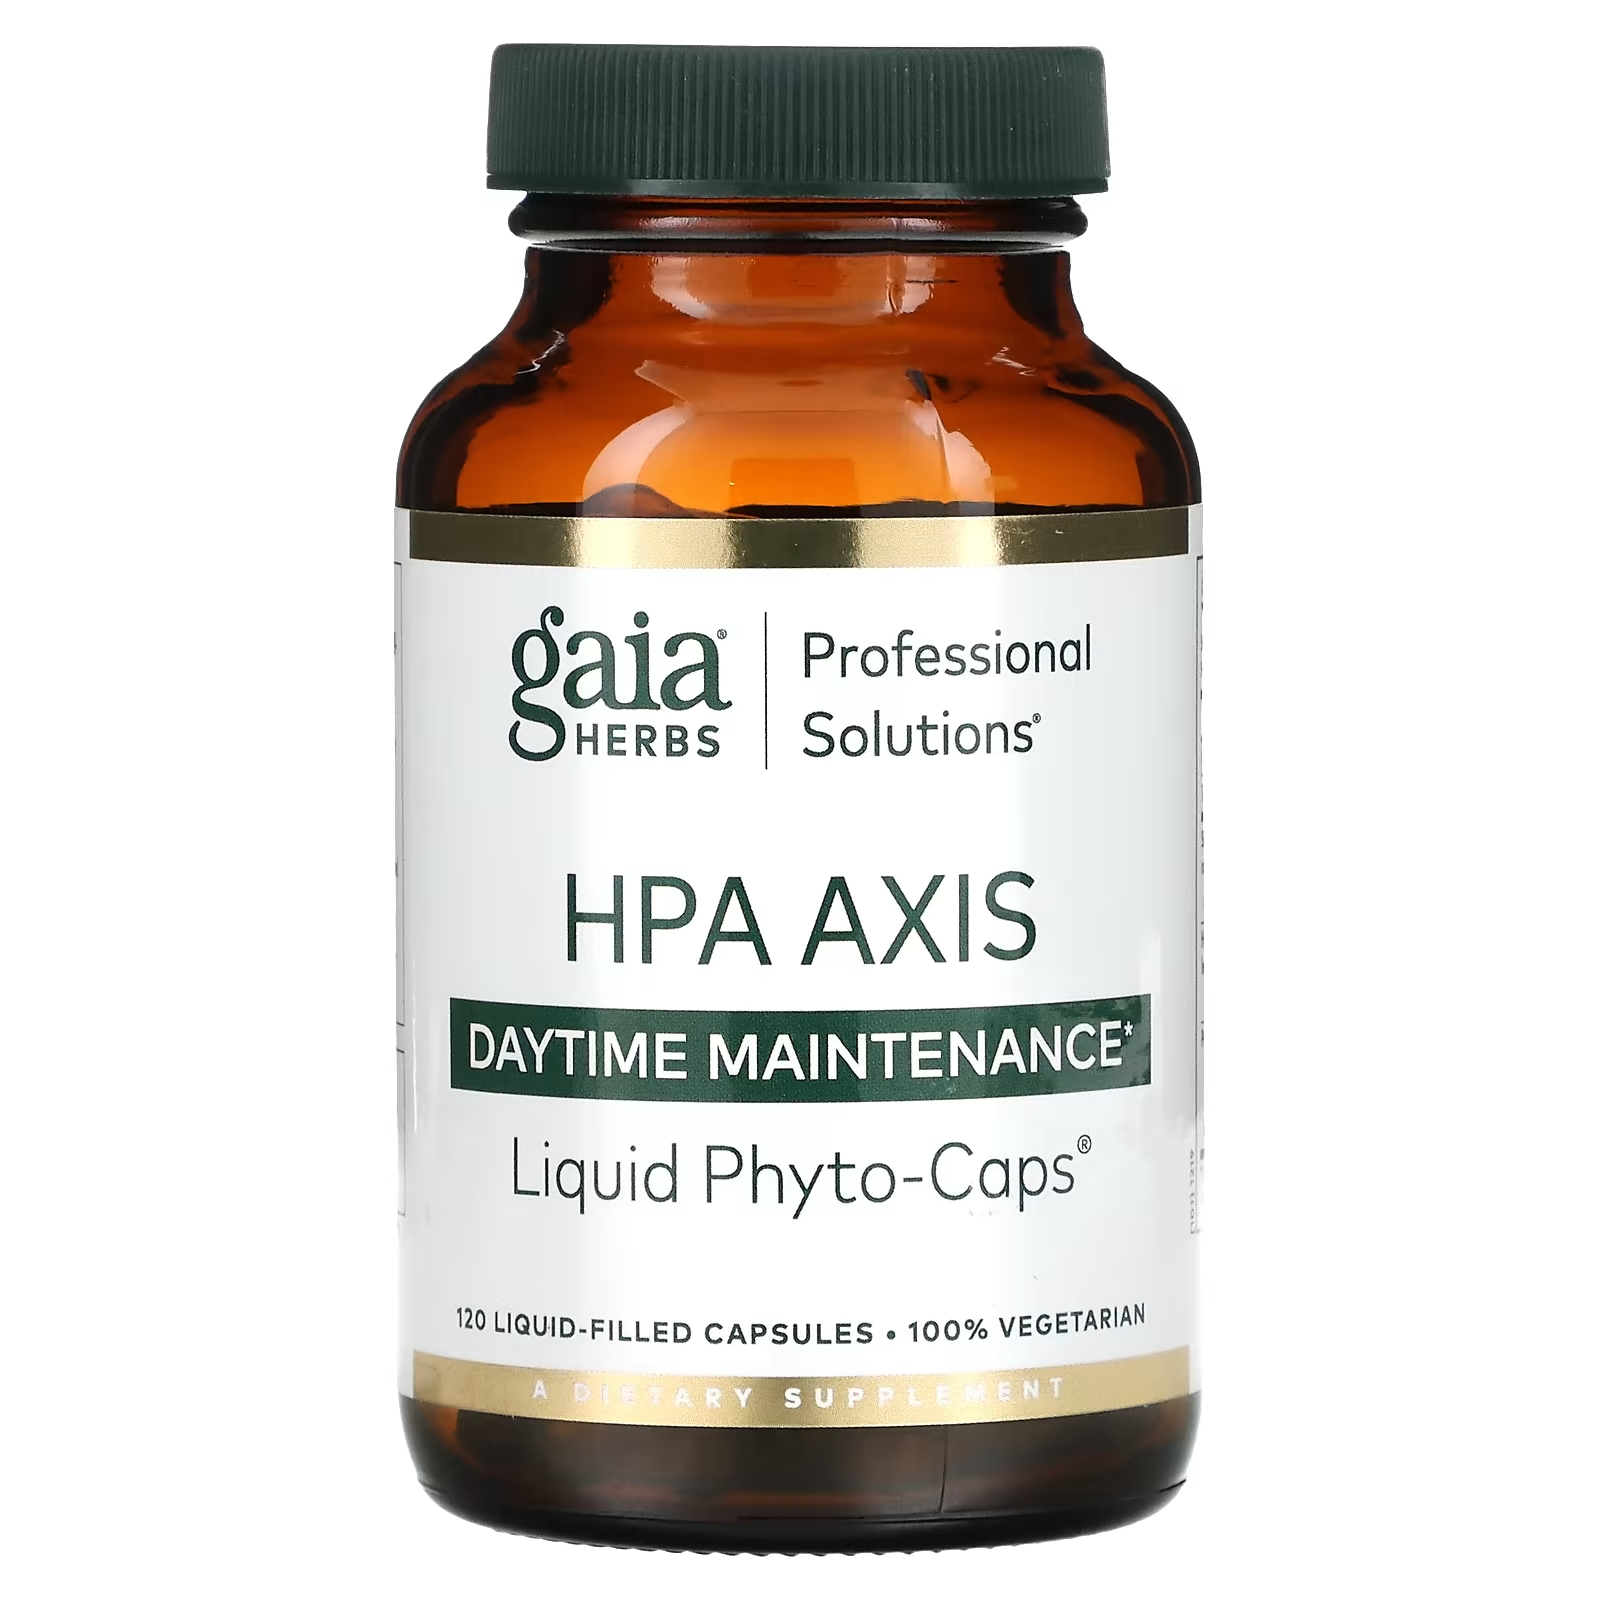 Gaia Herbs Professional Solutions Средство для борьбы со стрессом из серии HPA Axis для равновесия каждый день, 120 капсул